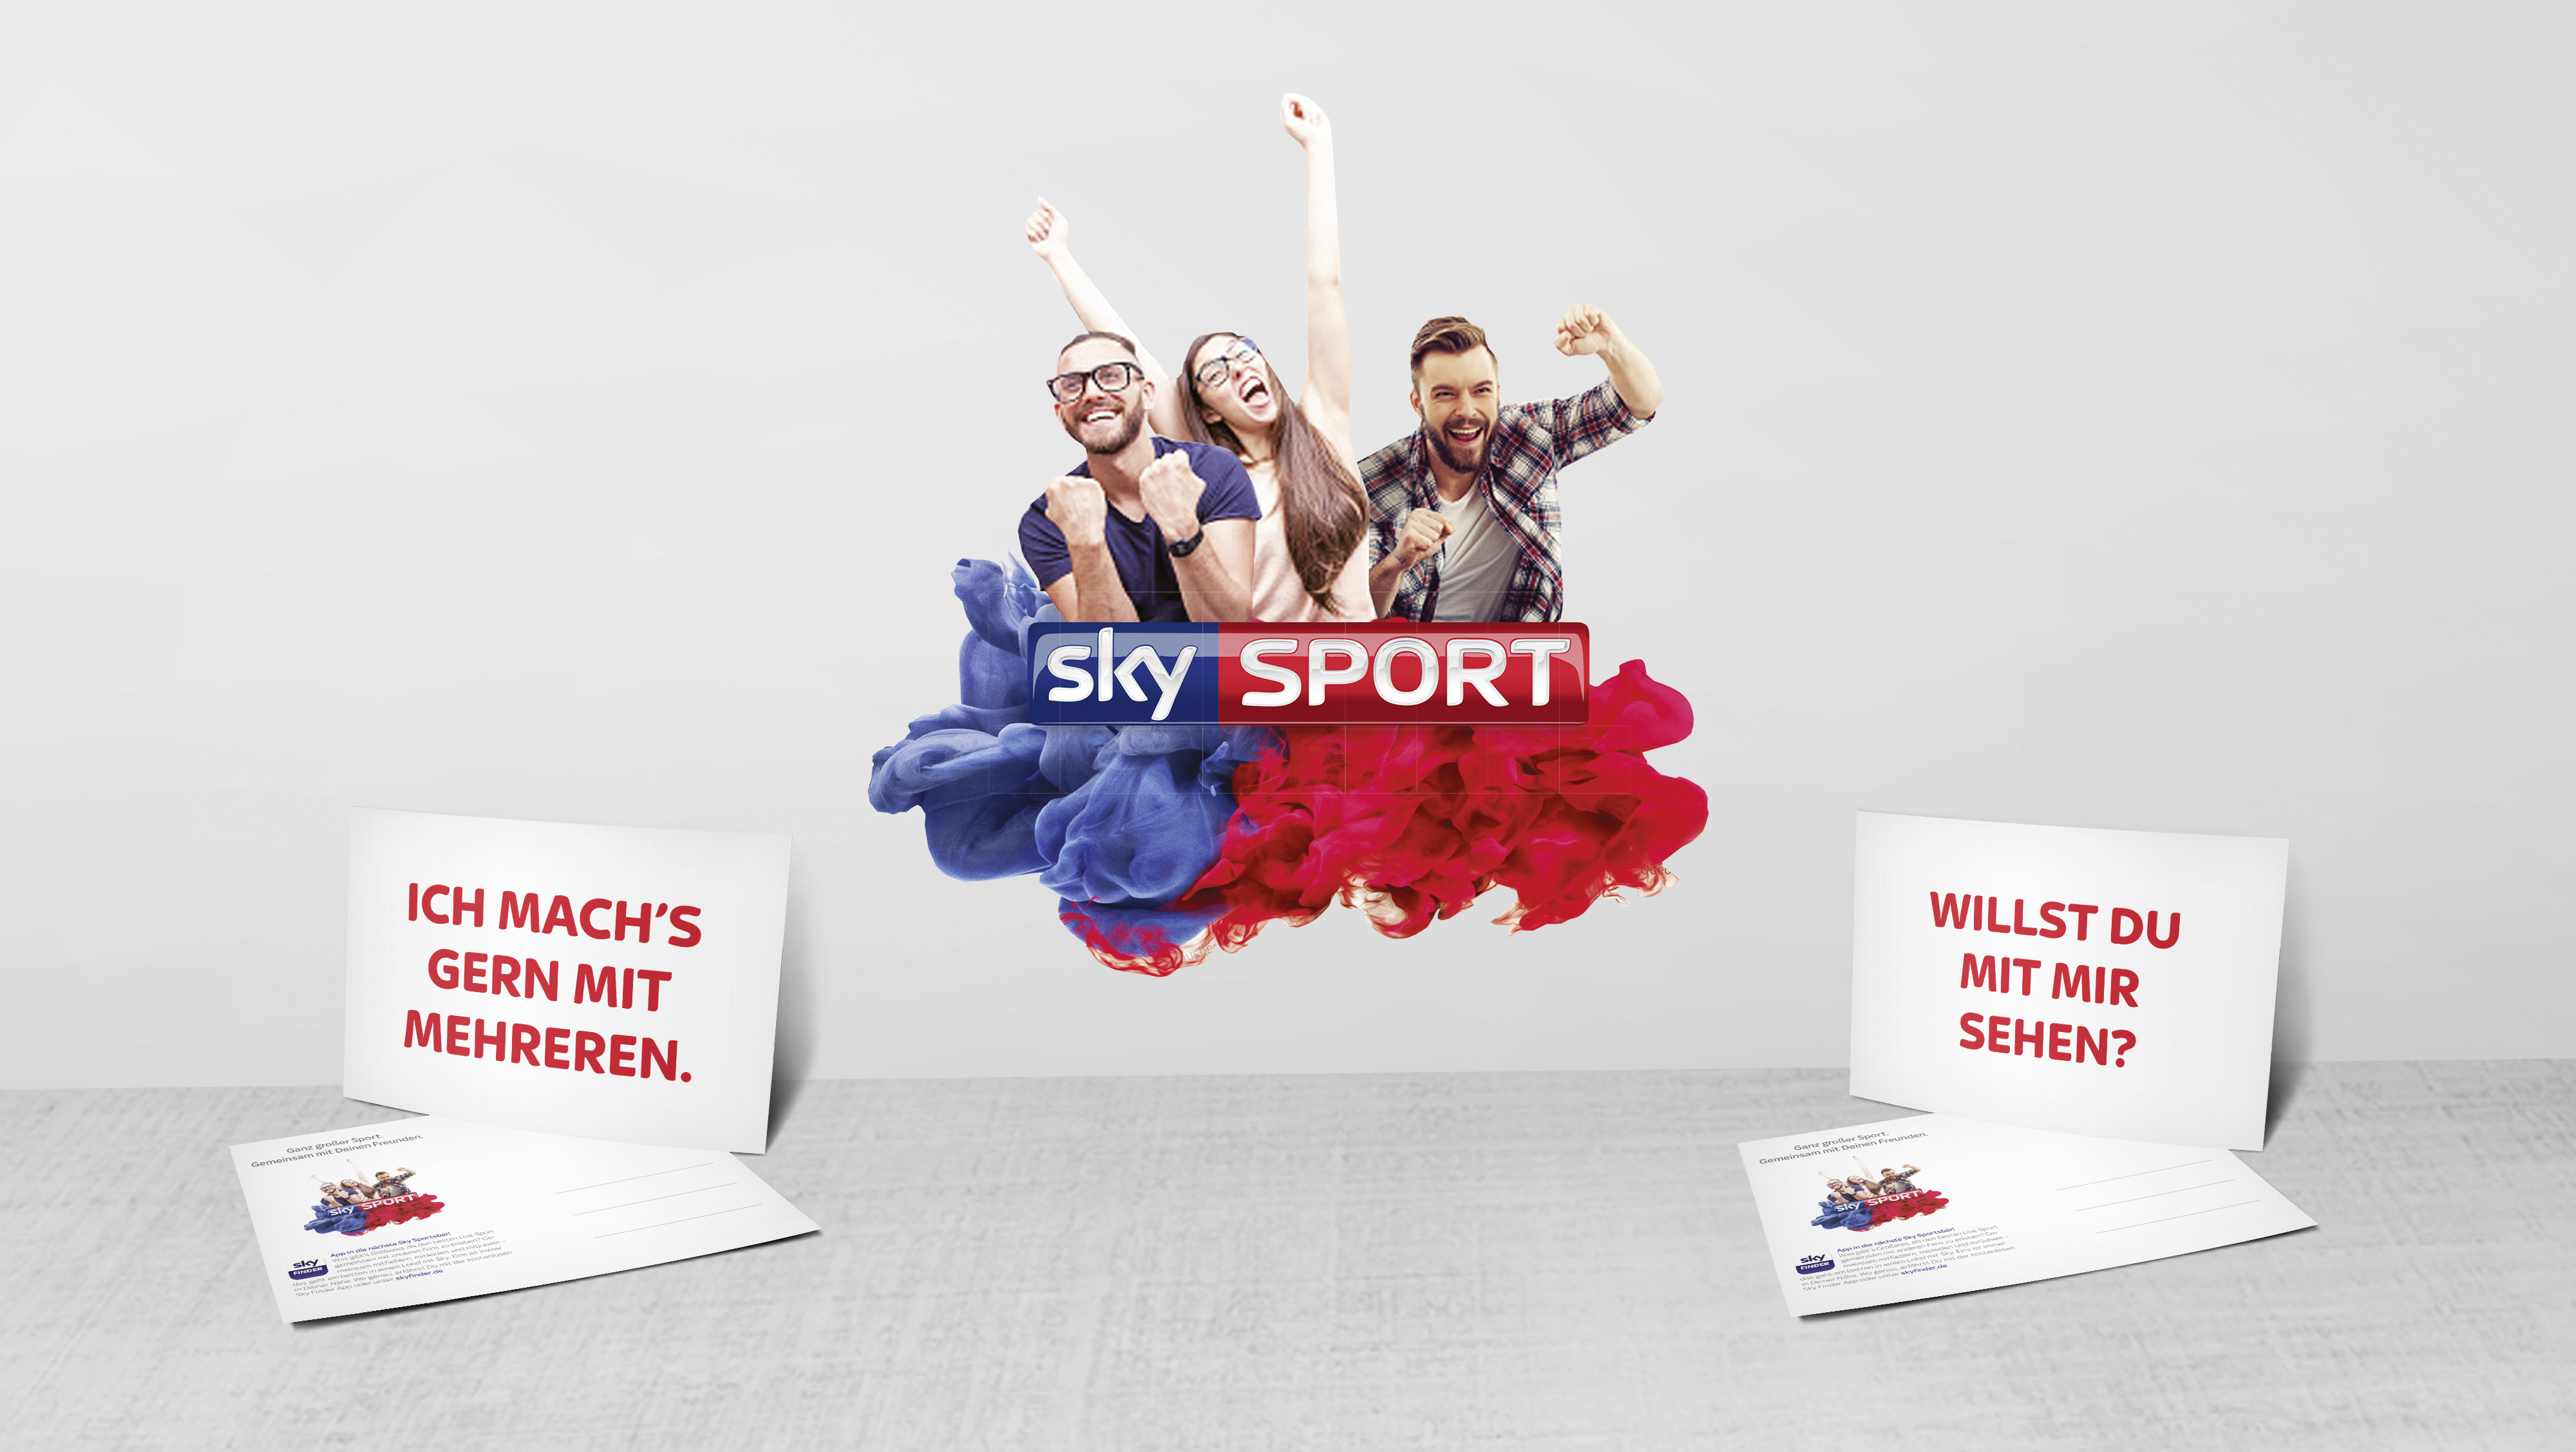 Sky Sport Werbekampagne: Motiv mit jubelnden Fans und Edgar Cards